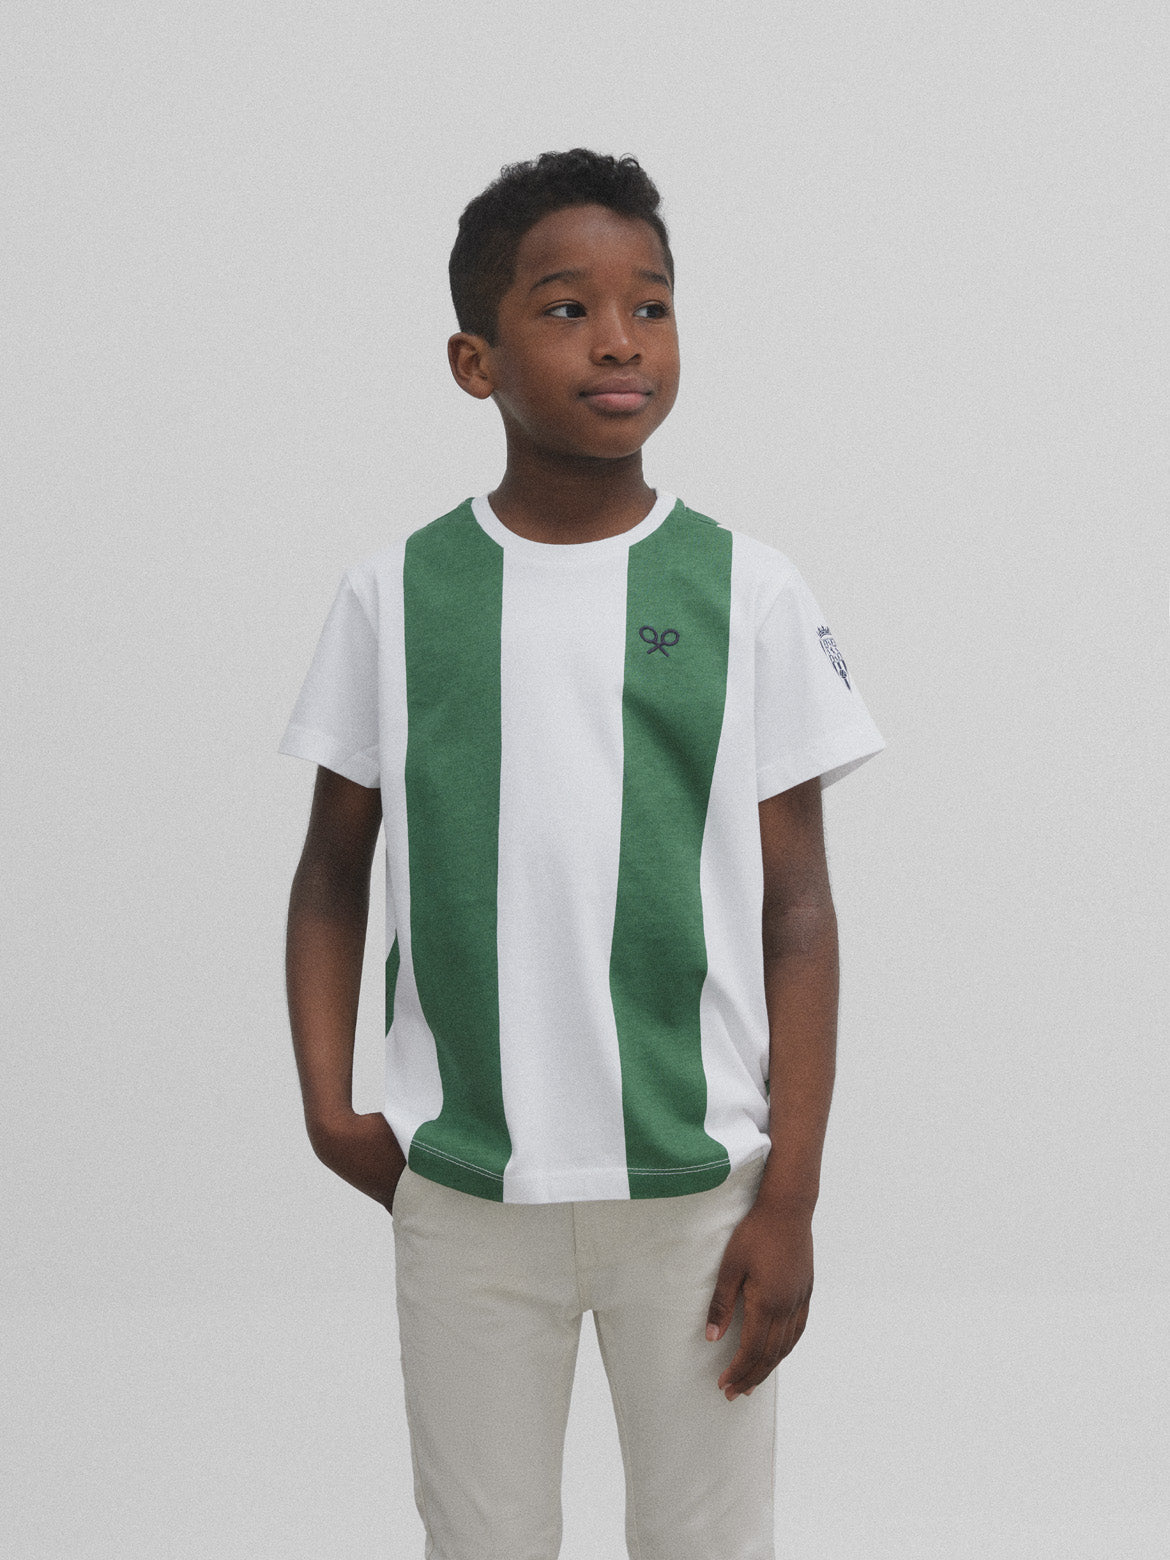 Retro kids t-shirt white and green silbon white